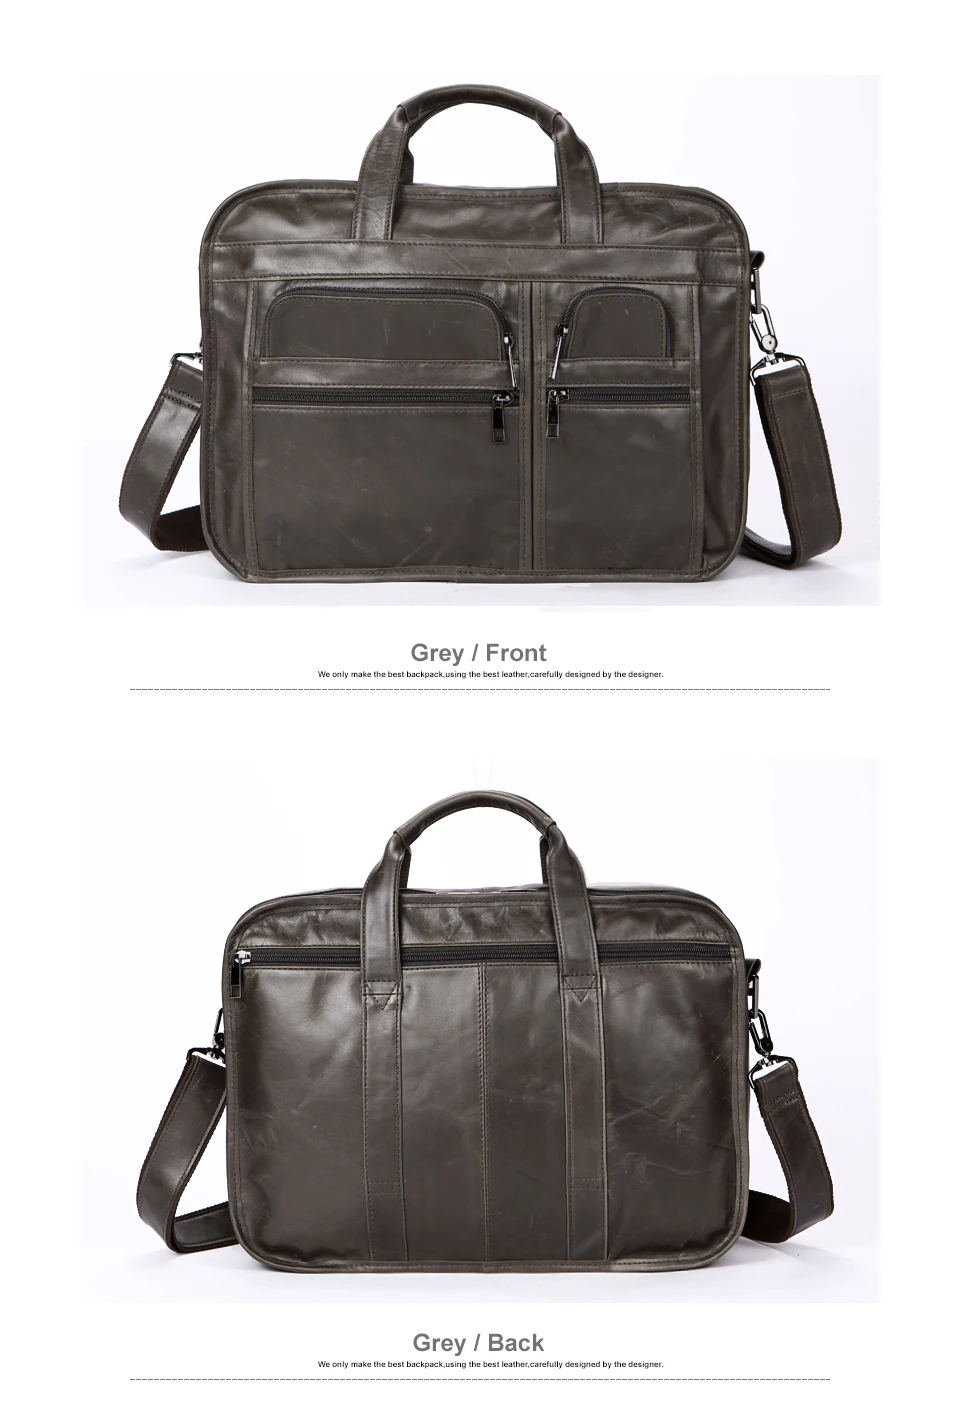 WESTAL сумка из натуральной кожи, деловая мужская сумка, мужская сумка для ноутбука, портфель, сумки через плечо, сумка через плечо, мужская сумка-мессенджер 8893